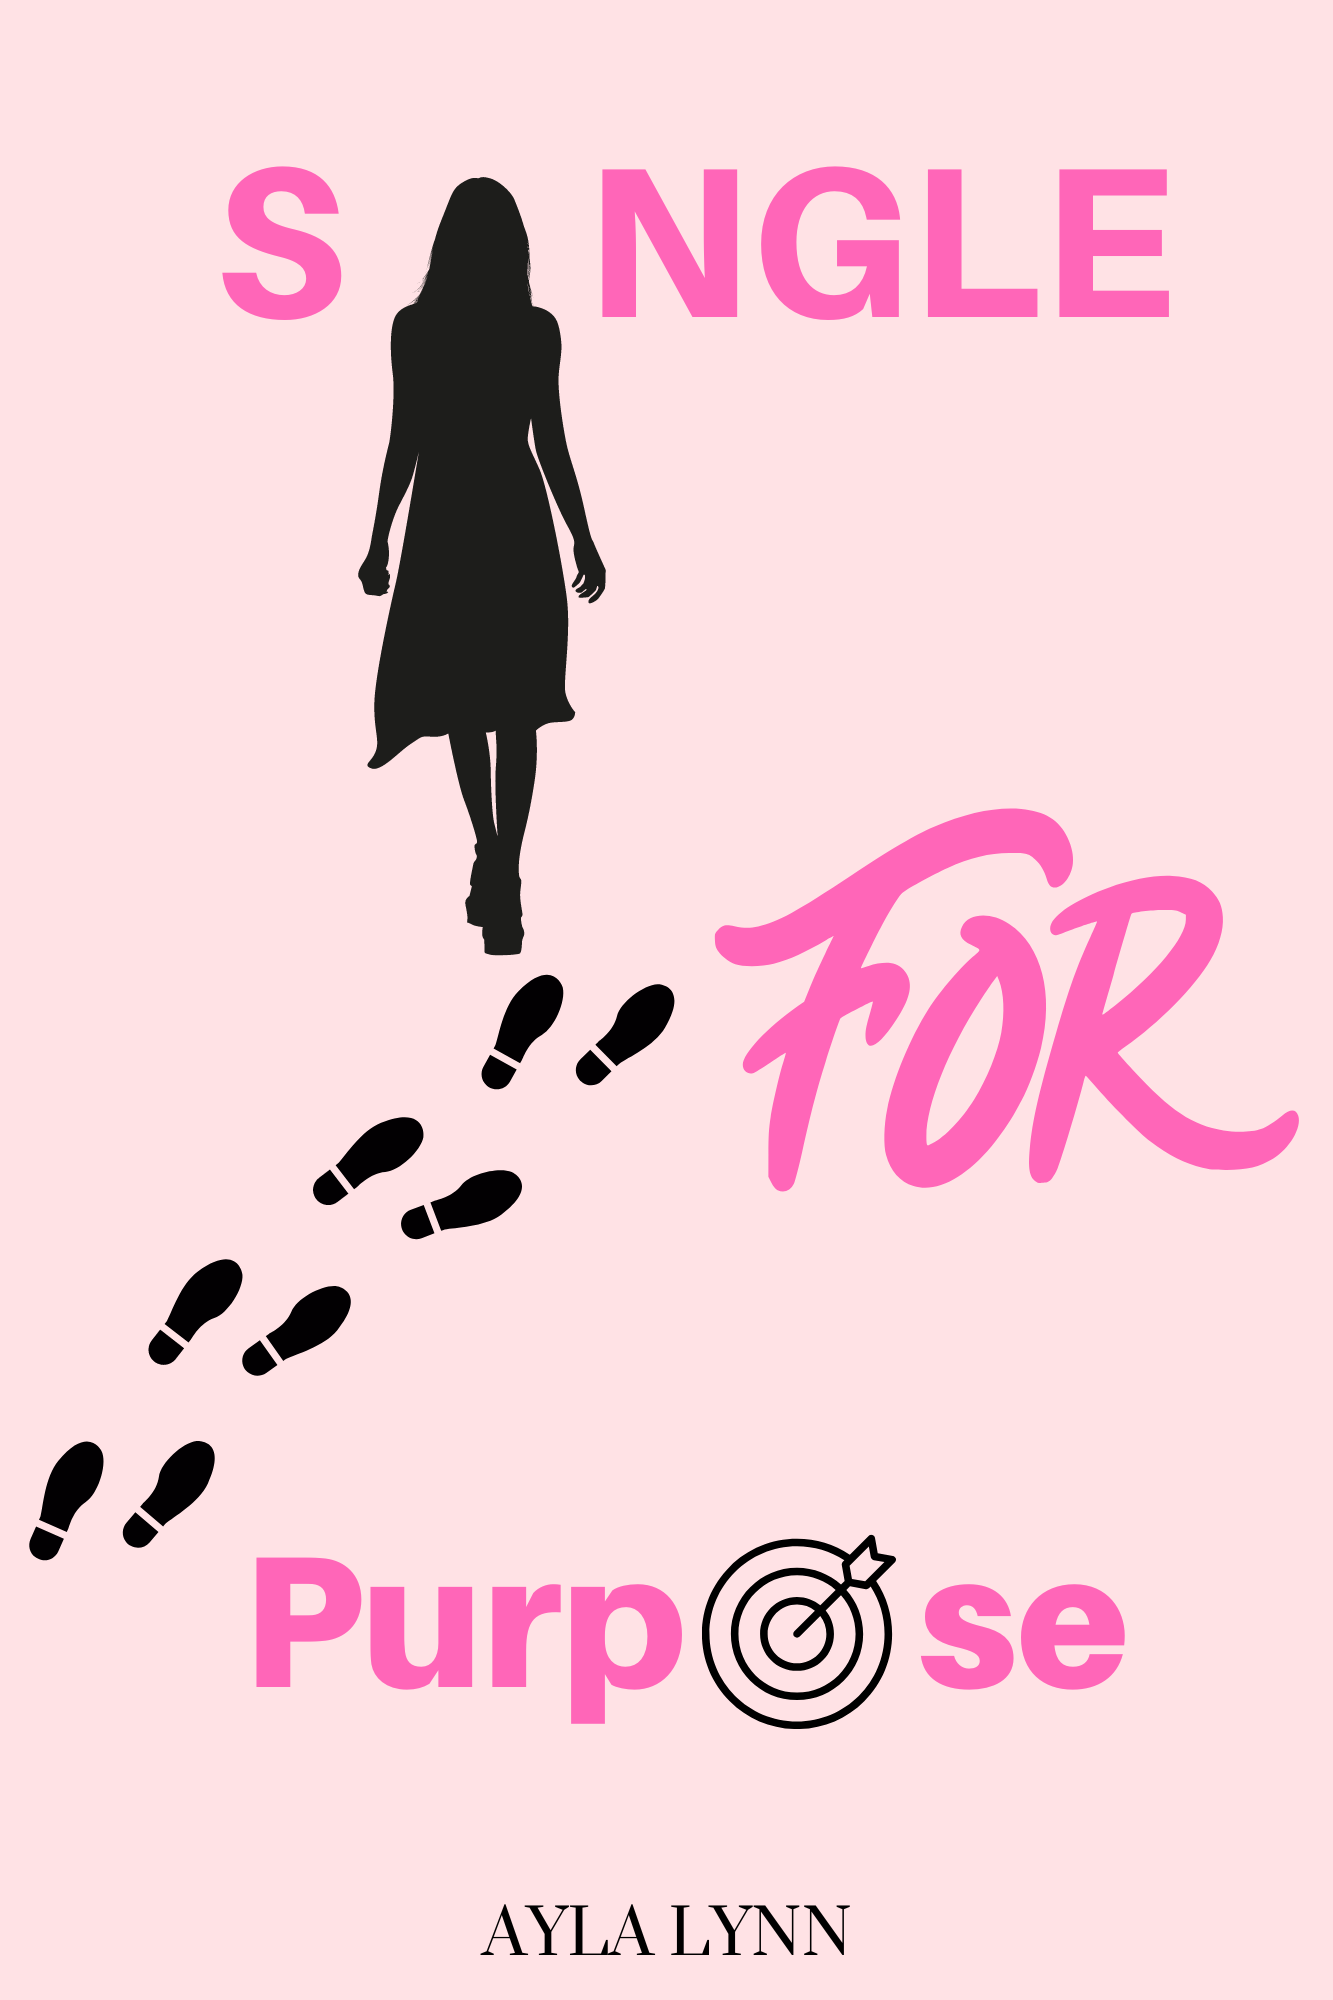 Single For Purpose E-Book